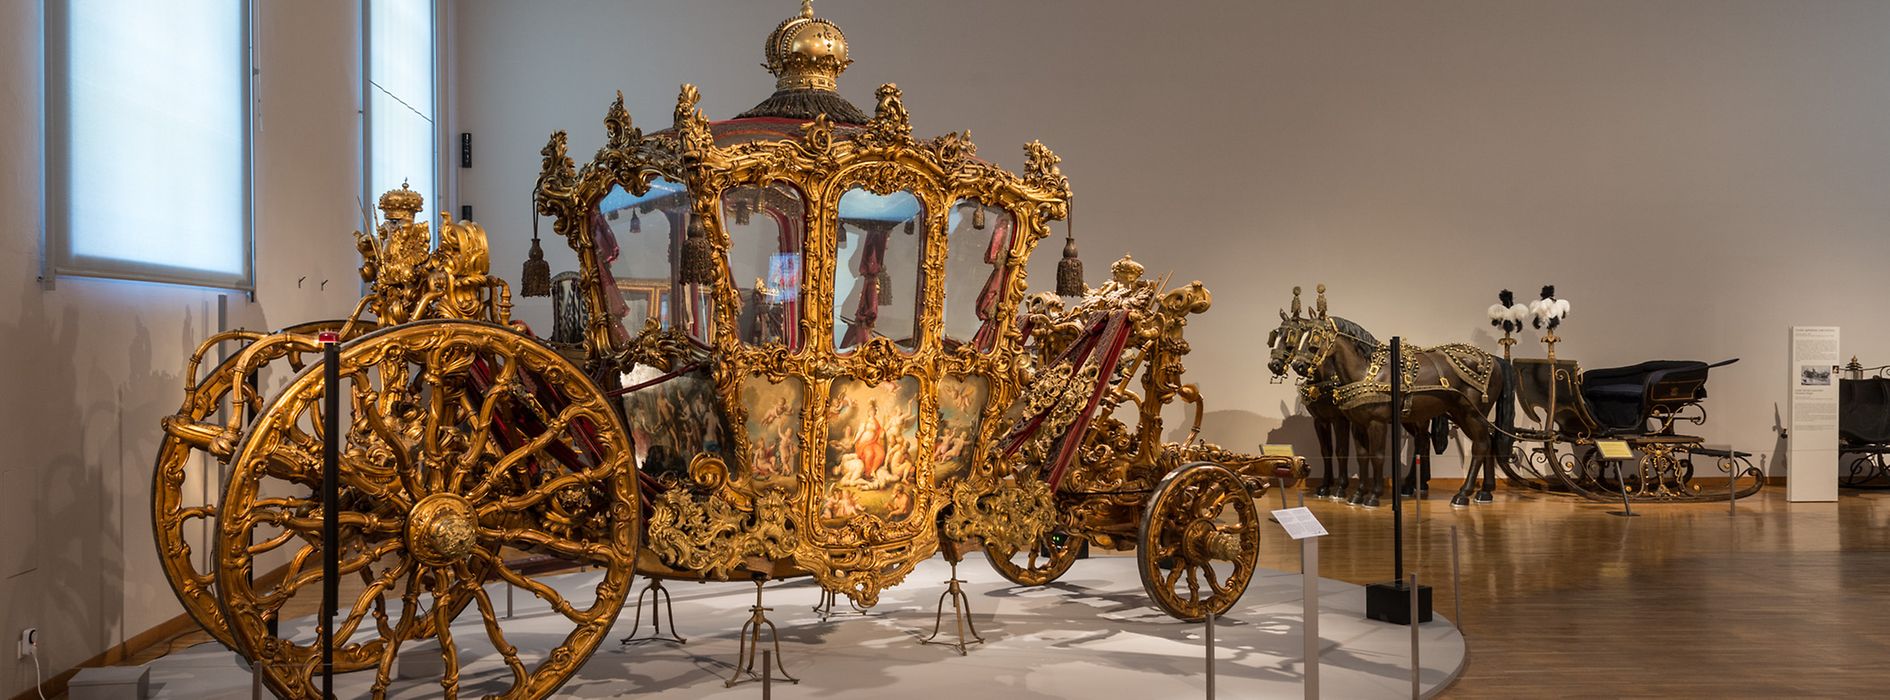 Goldener Imperialwagen